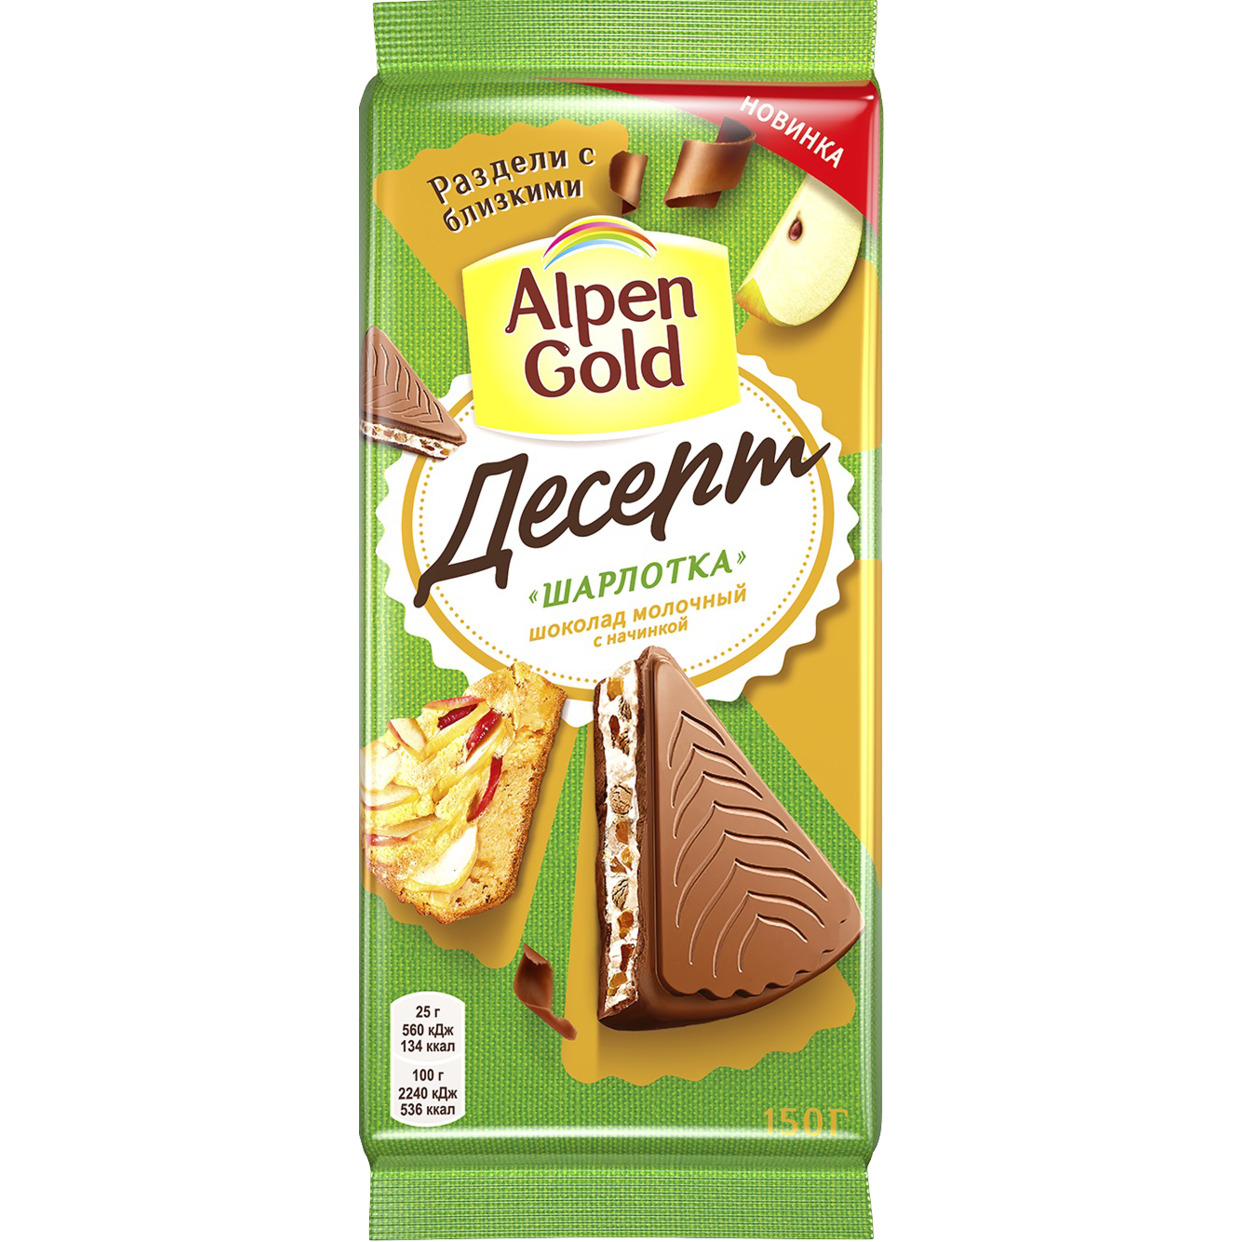 Шоколад молочный Alpen Gold Десерт Шарлотка с начинкой со вкусом шарлотки, с яблочными кусочками и имбирным печеньем, 150г по акции в Пятерочке